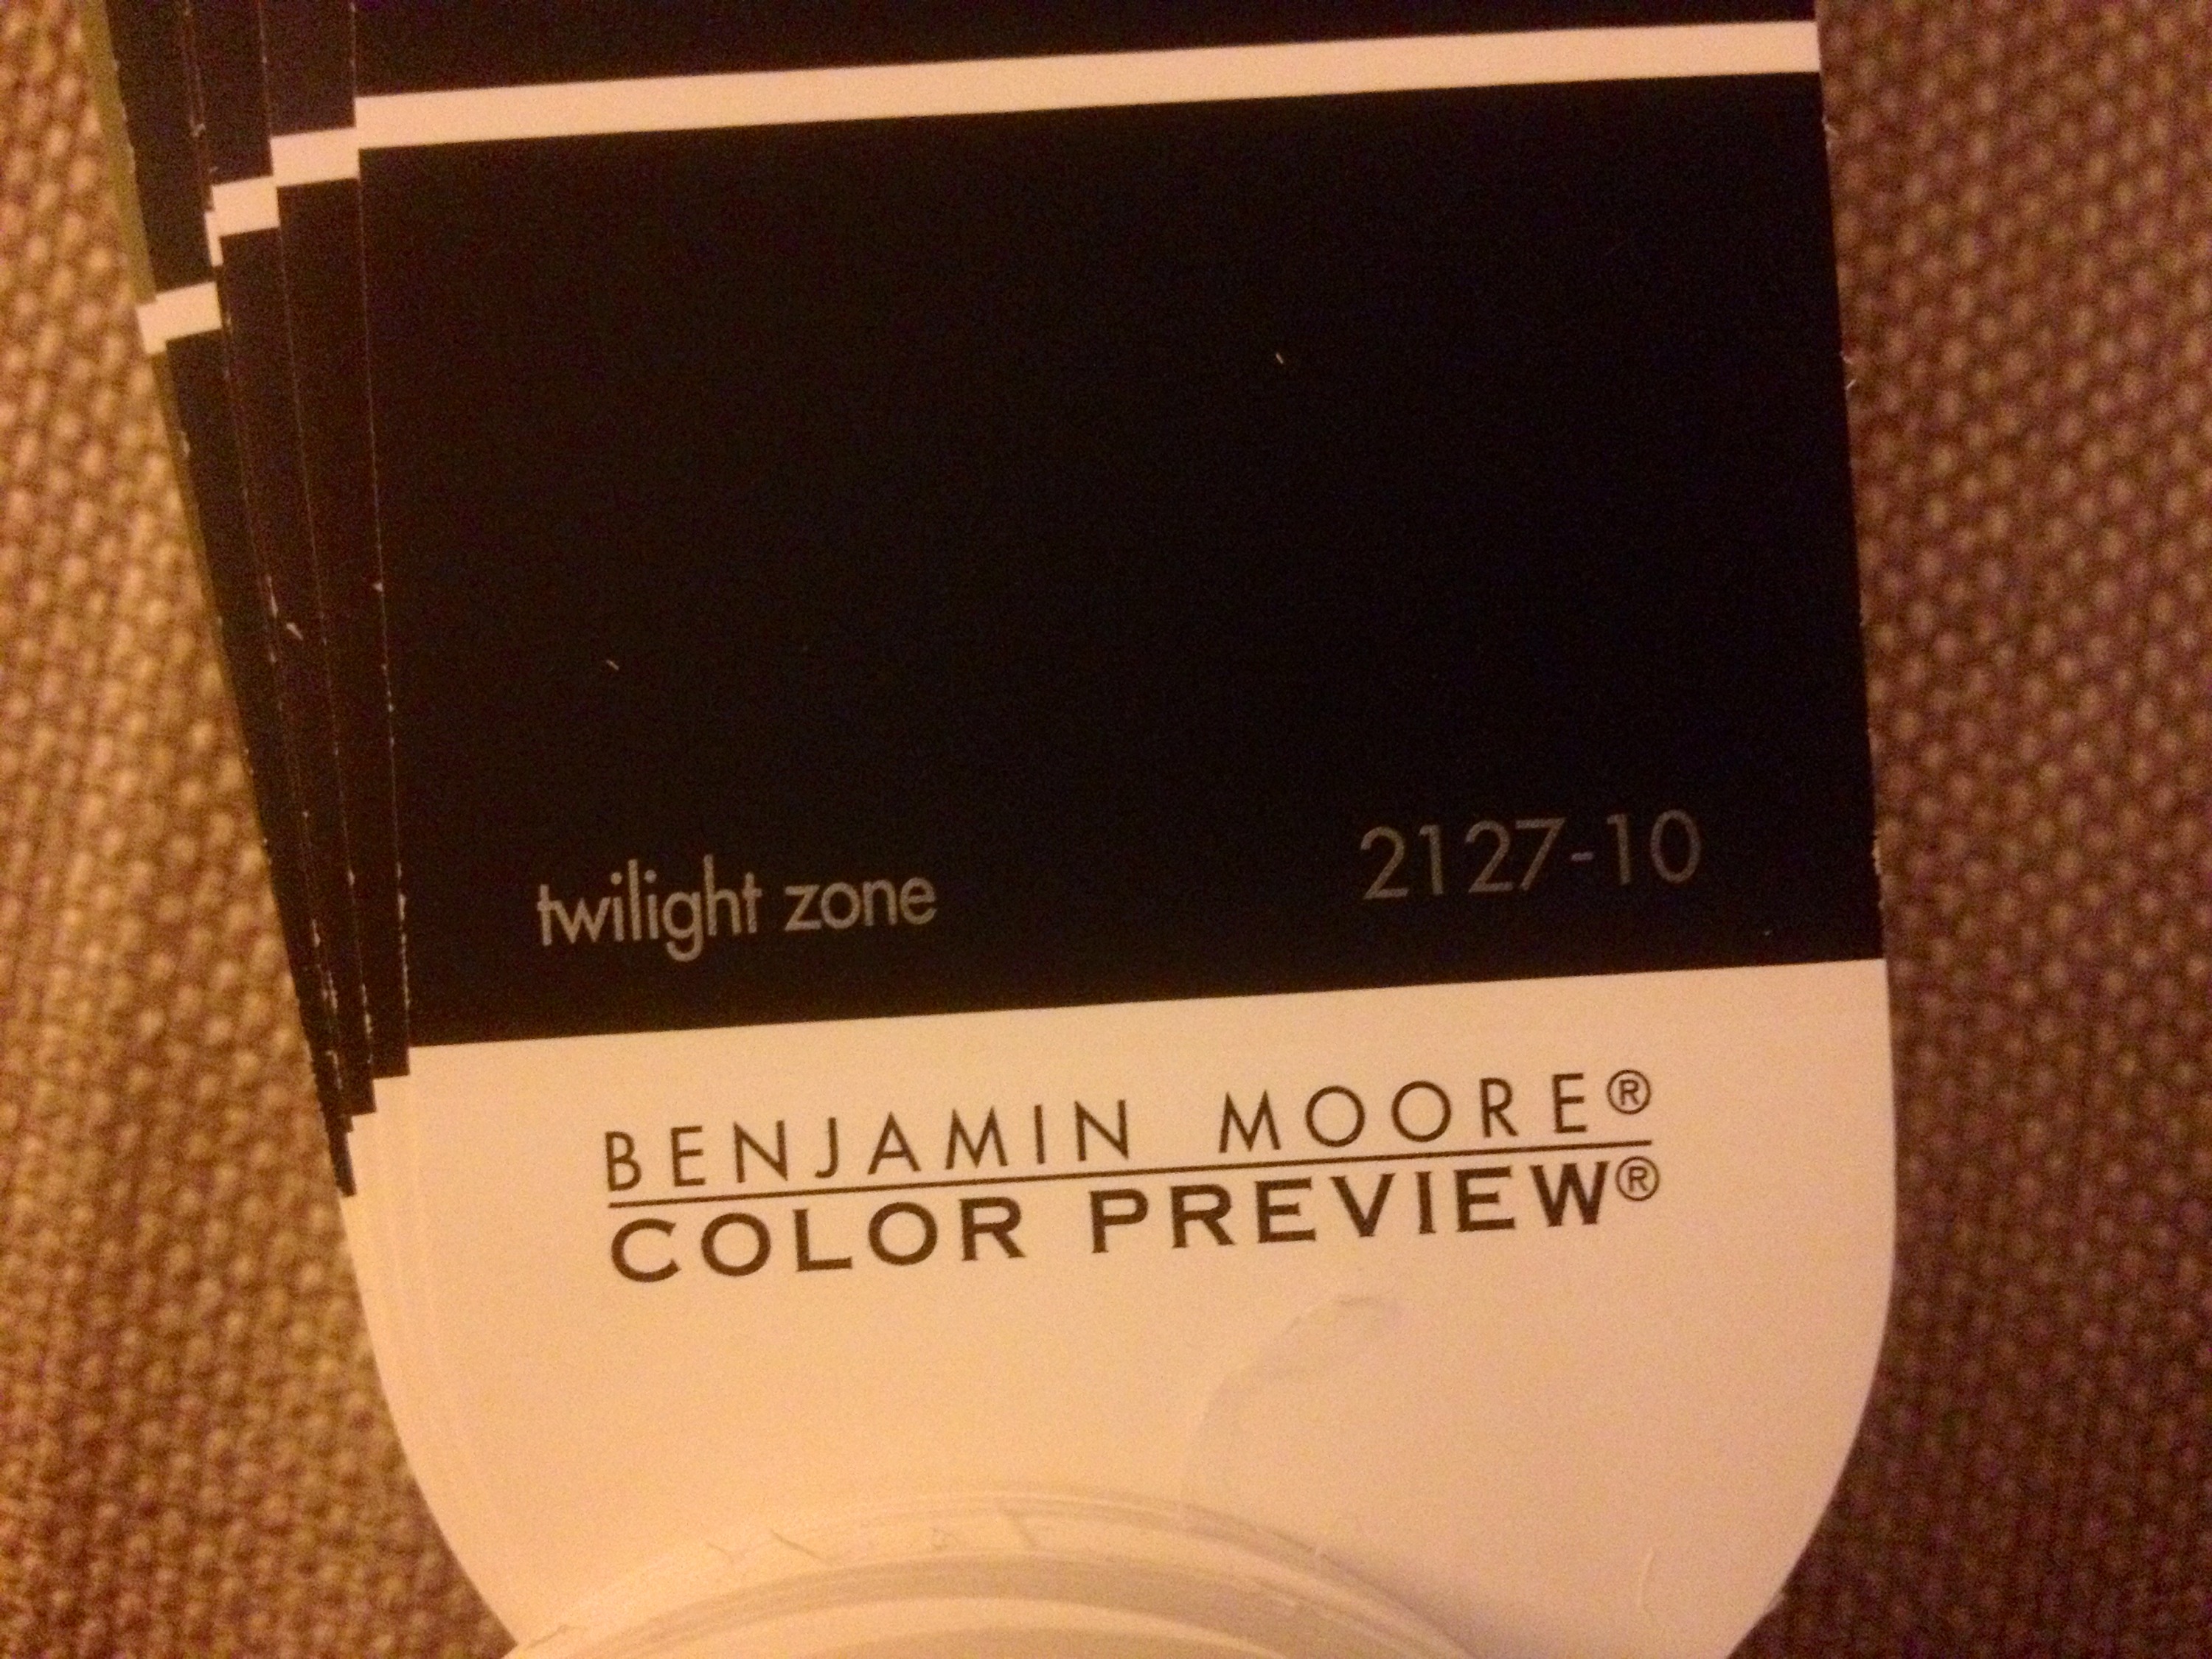 Benjamin Moore Paint: Twilight Zone